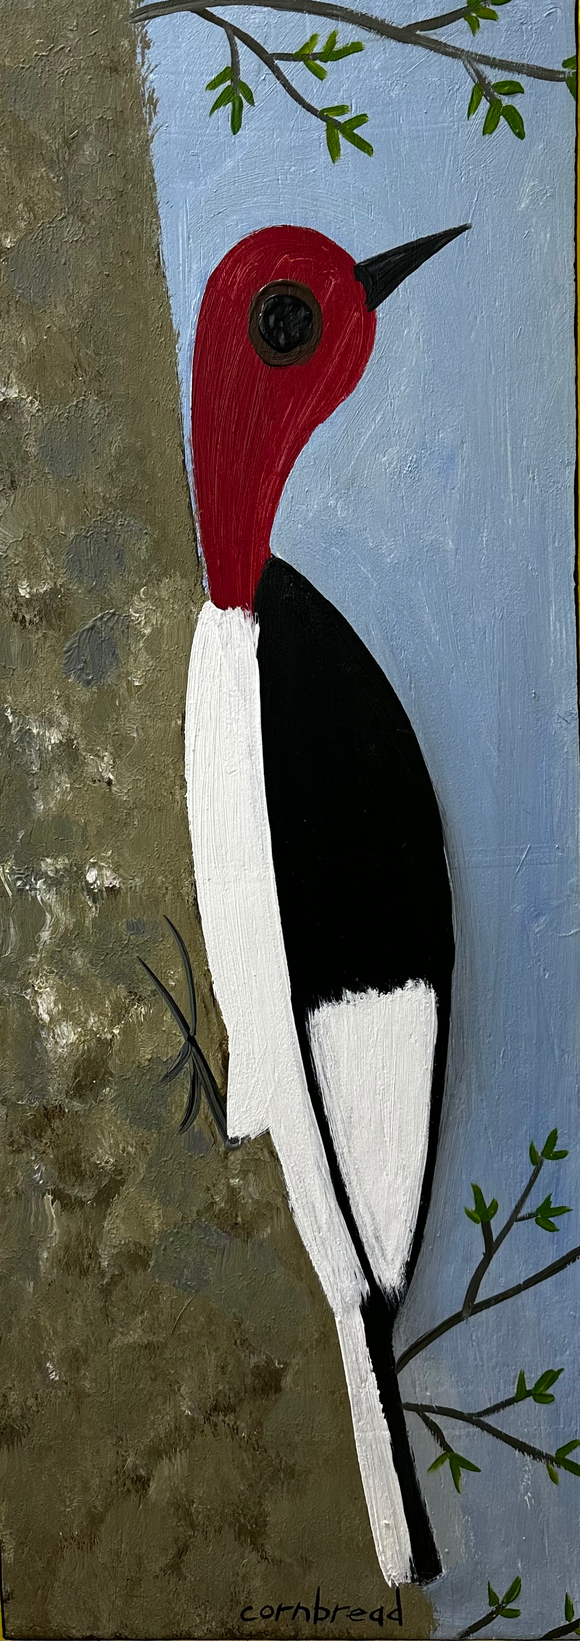 Red Headed Woodpecker on a Pecan